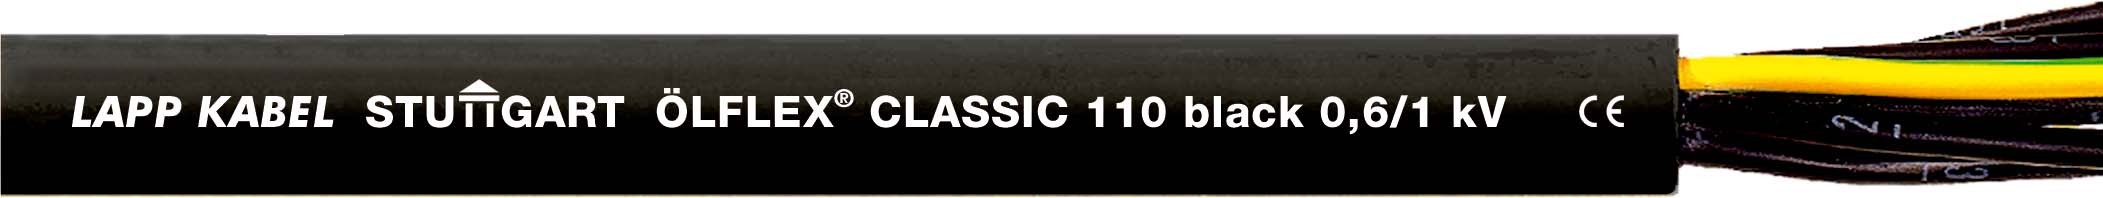 ÖLFLEX CLASSIC 110 Black 0,6/1kV 4G2,5 1120342 T500 